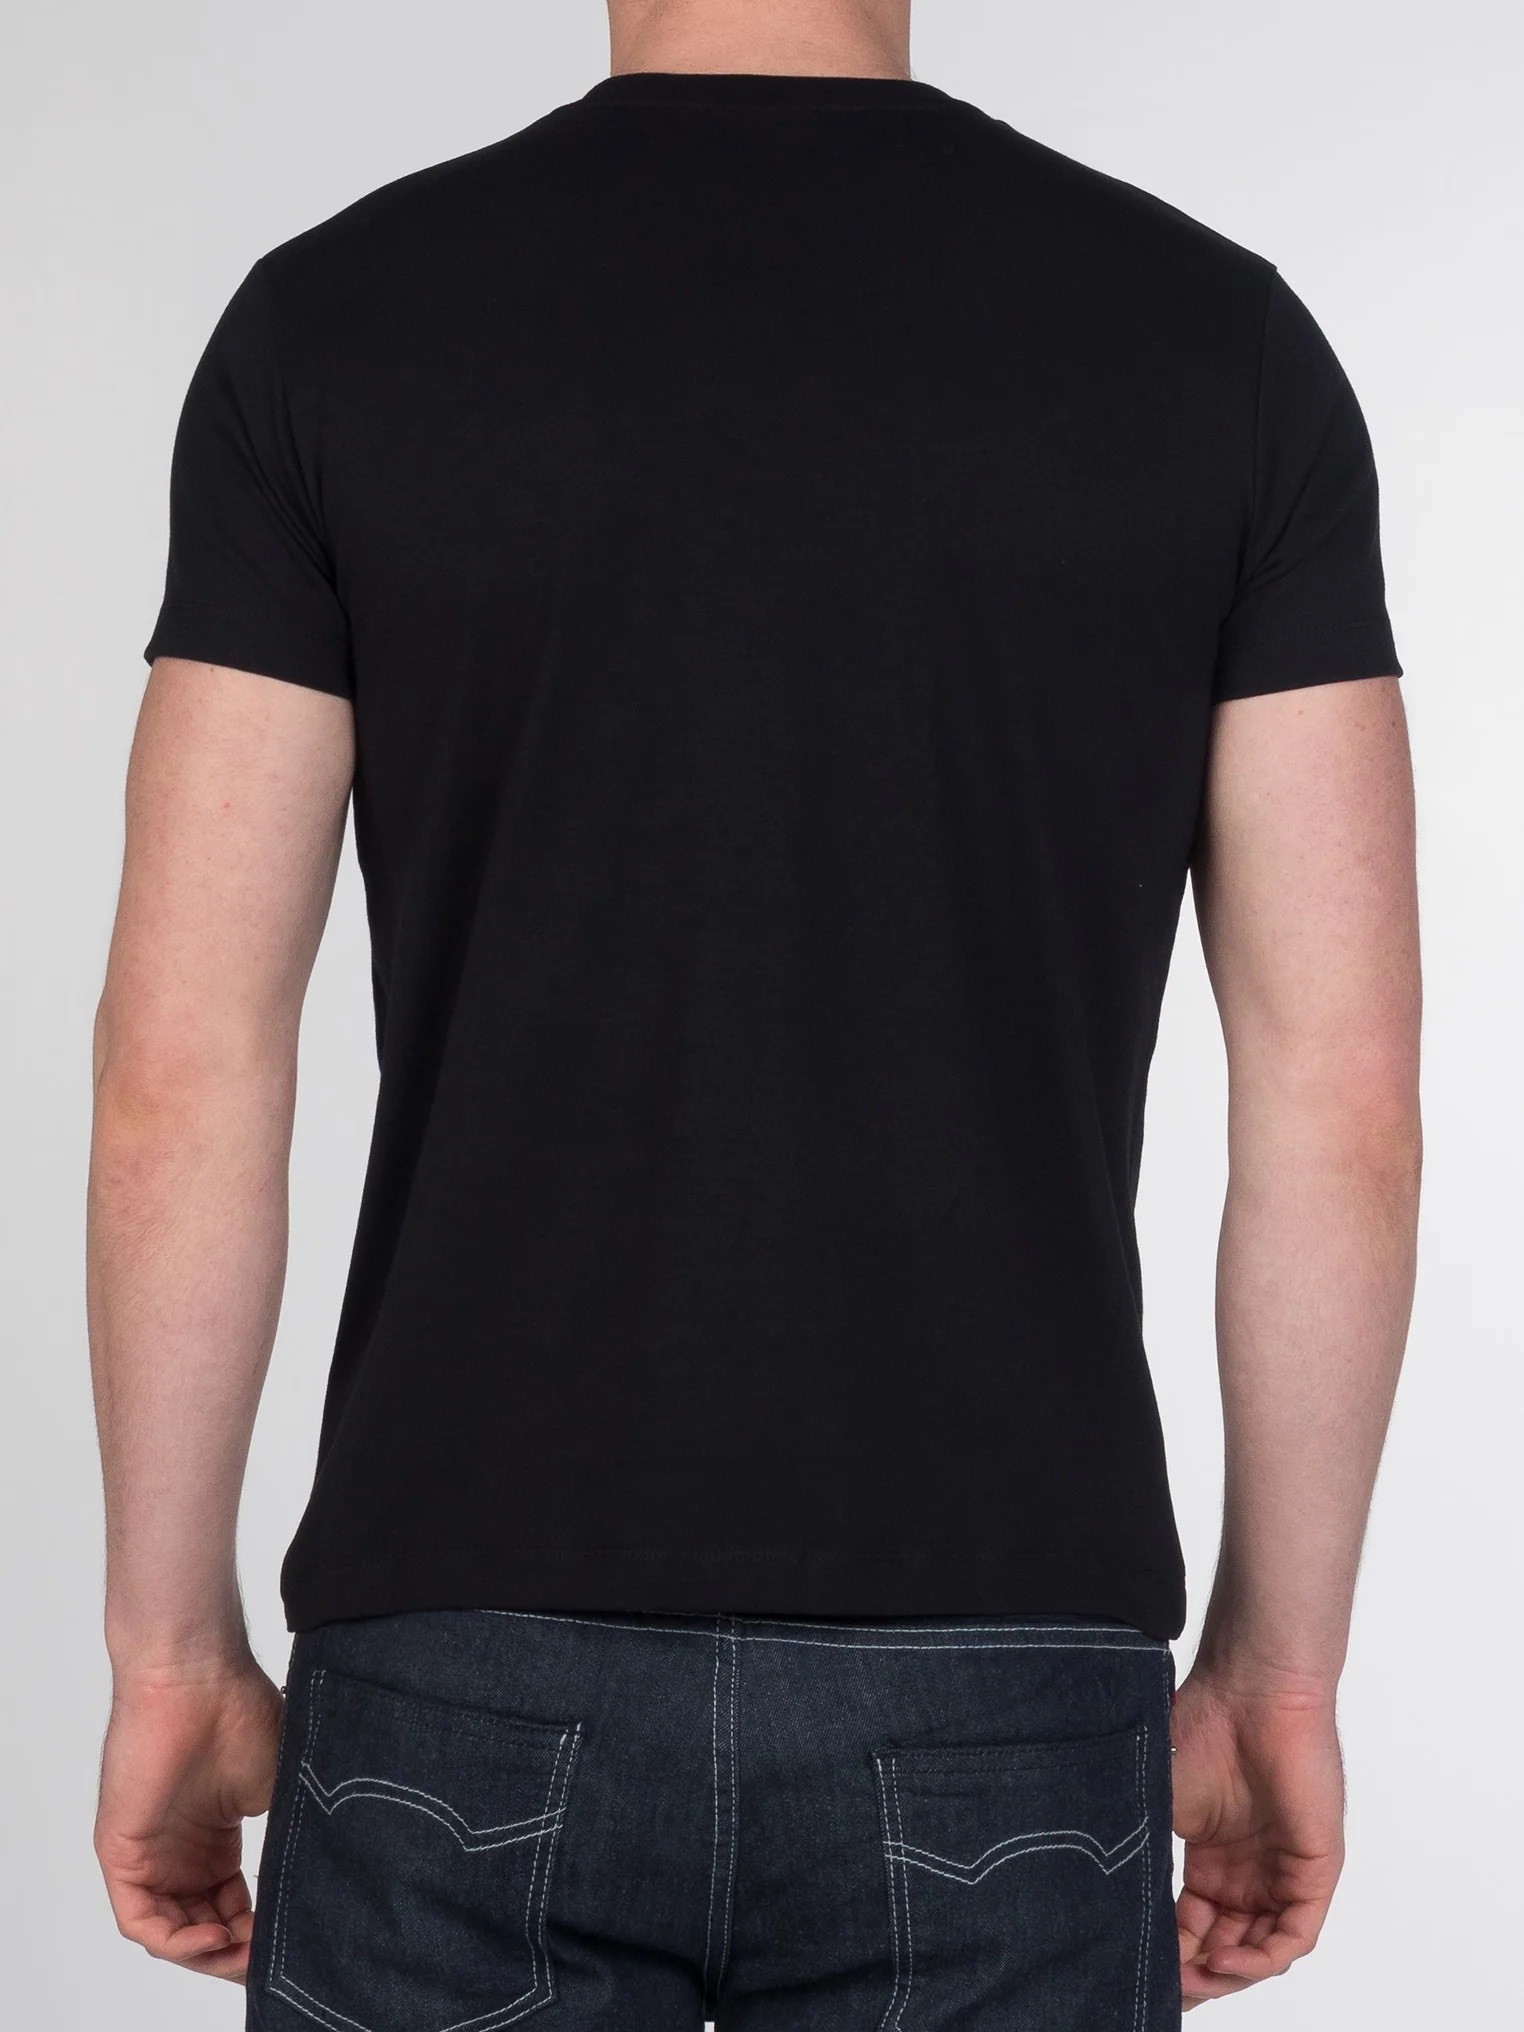 Однотонная мужская футболка Merc Keyport с вышитым на груди логотипом Корона, черная (black), купить на официальном сайте 